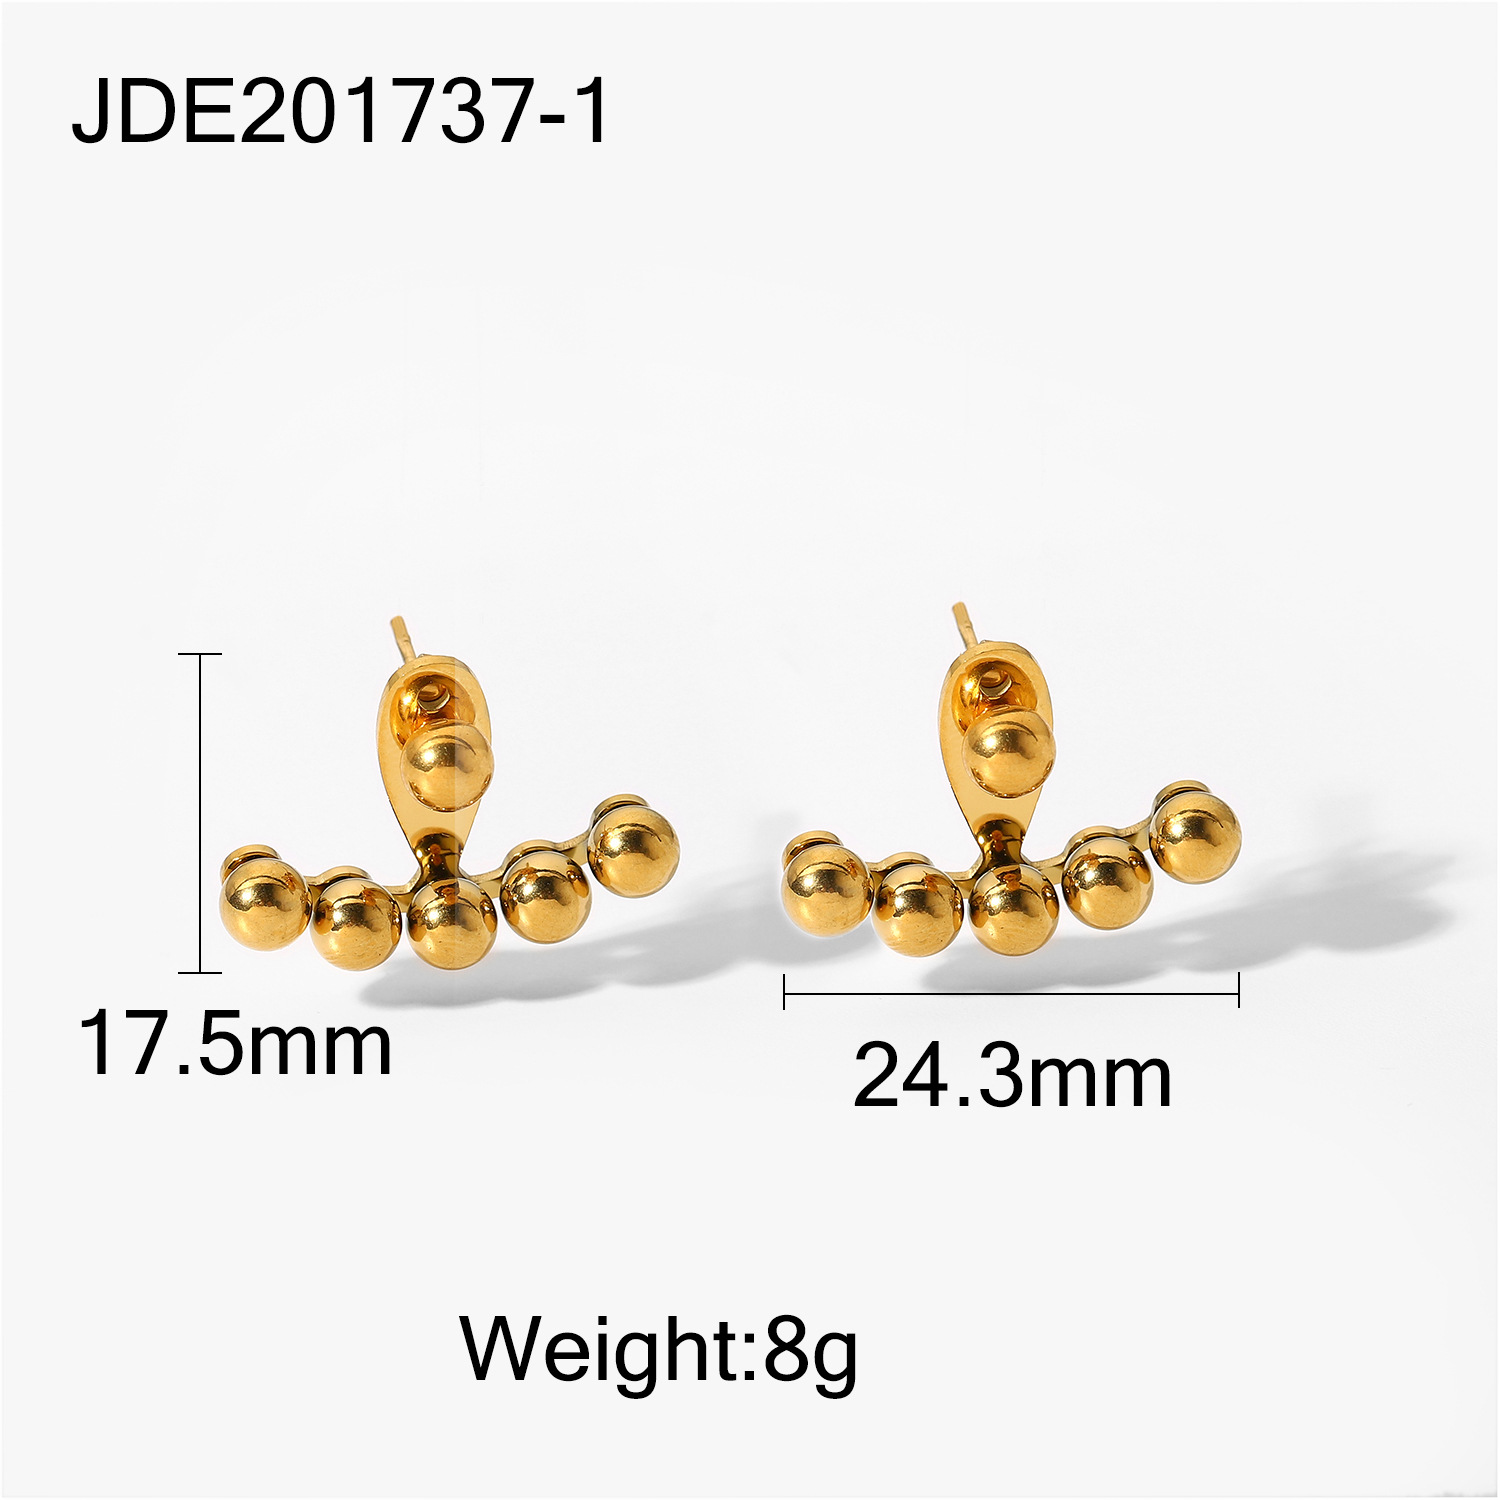 JDE201737-1